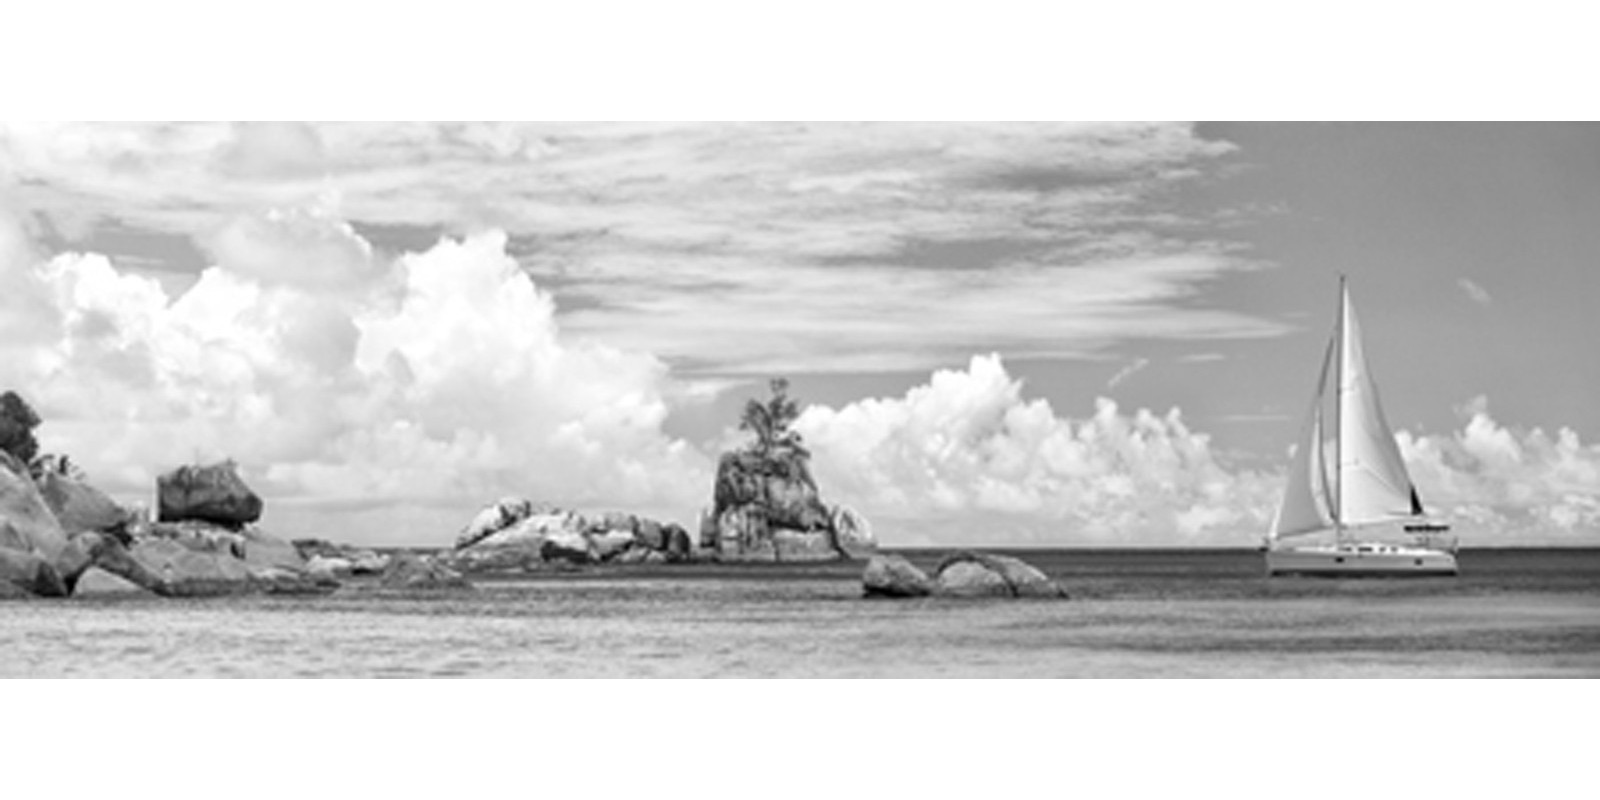 Pangea Images - Sailboat at La Digue, Seychelles (BW)